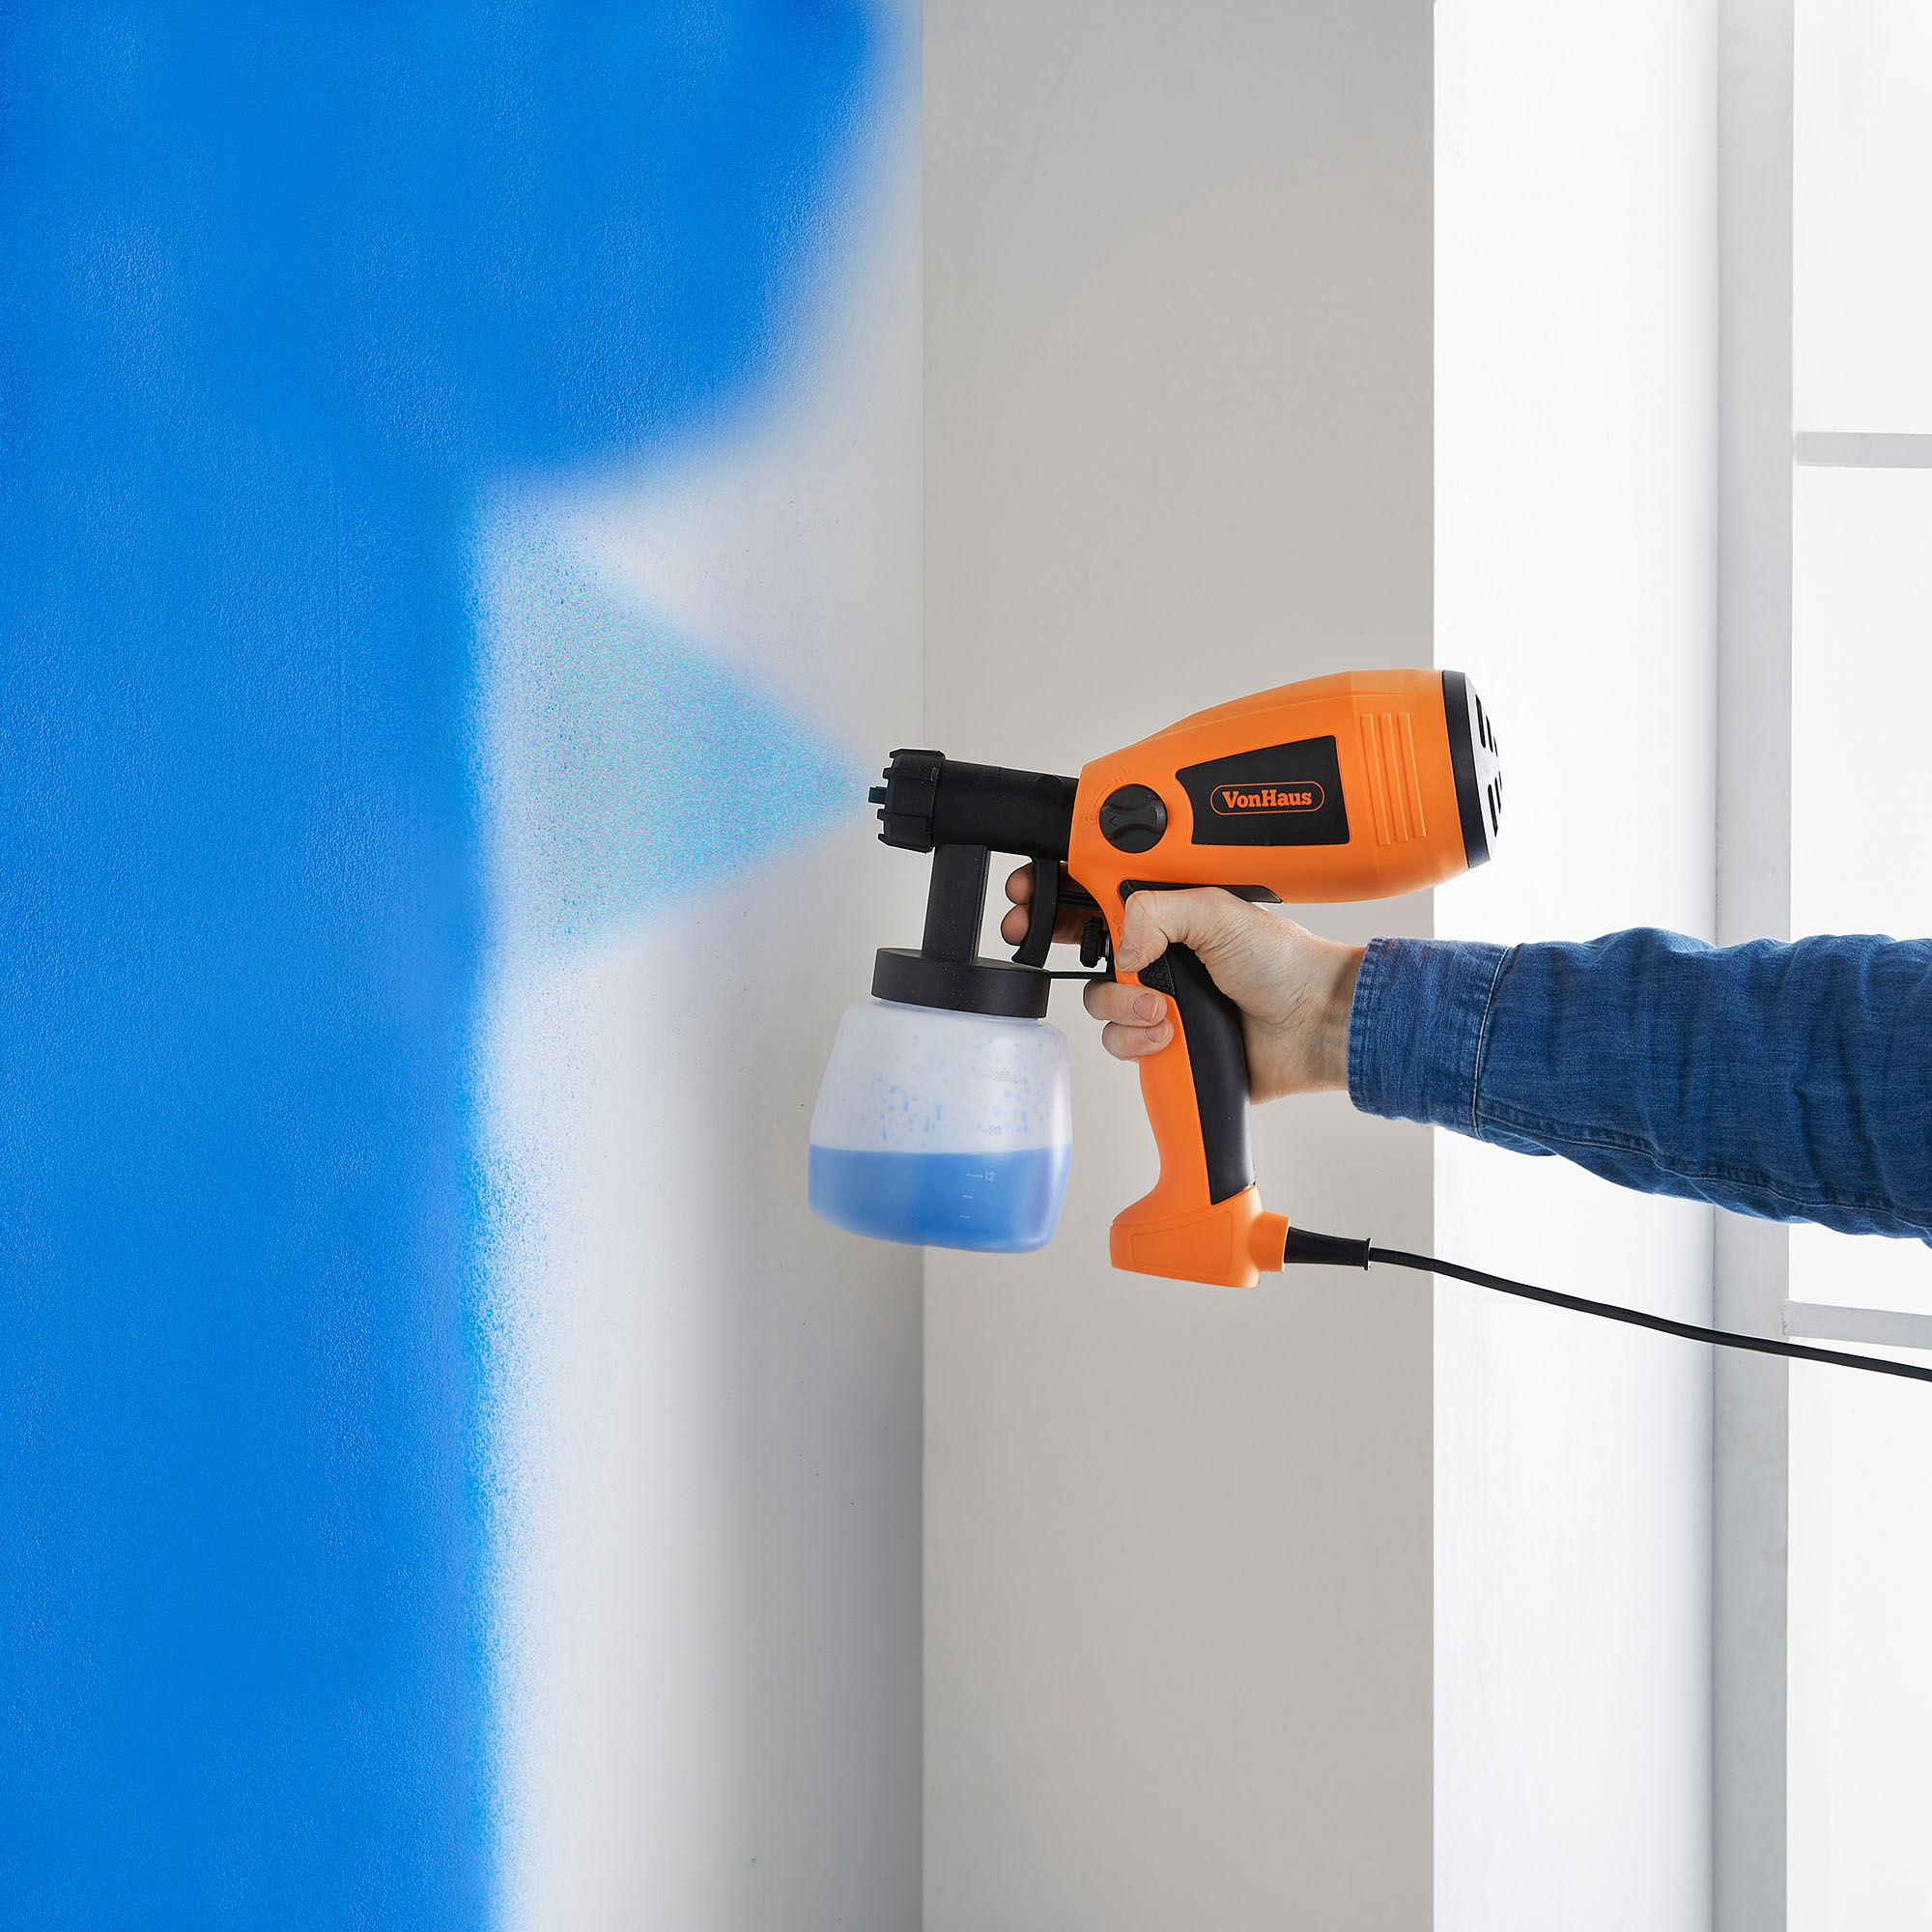 VonHaus Electric Paint Sprayer / Spray Gun For Painting Fences, Decking